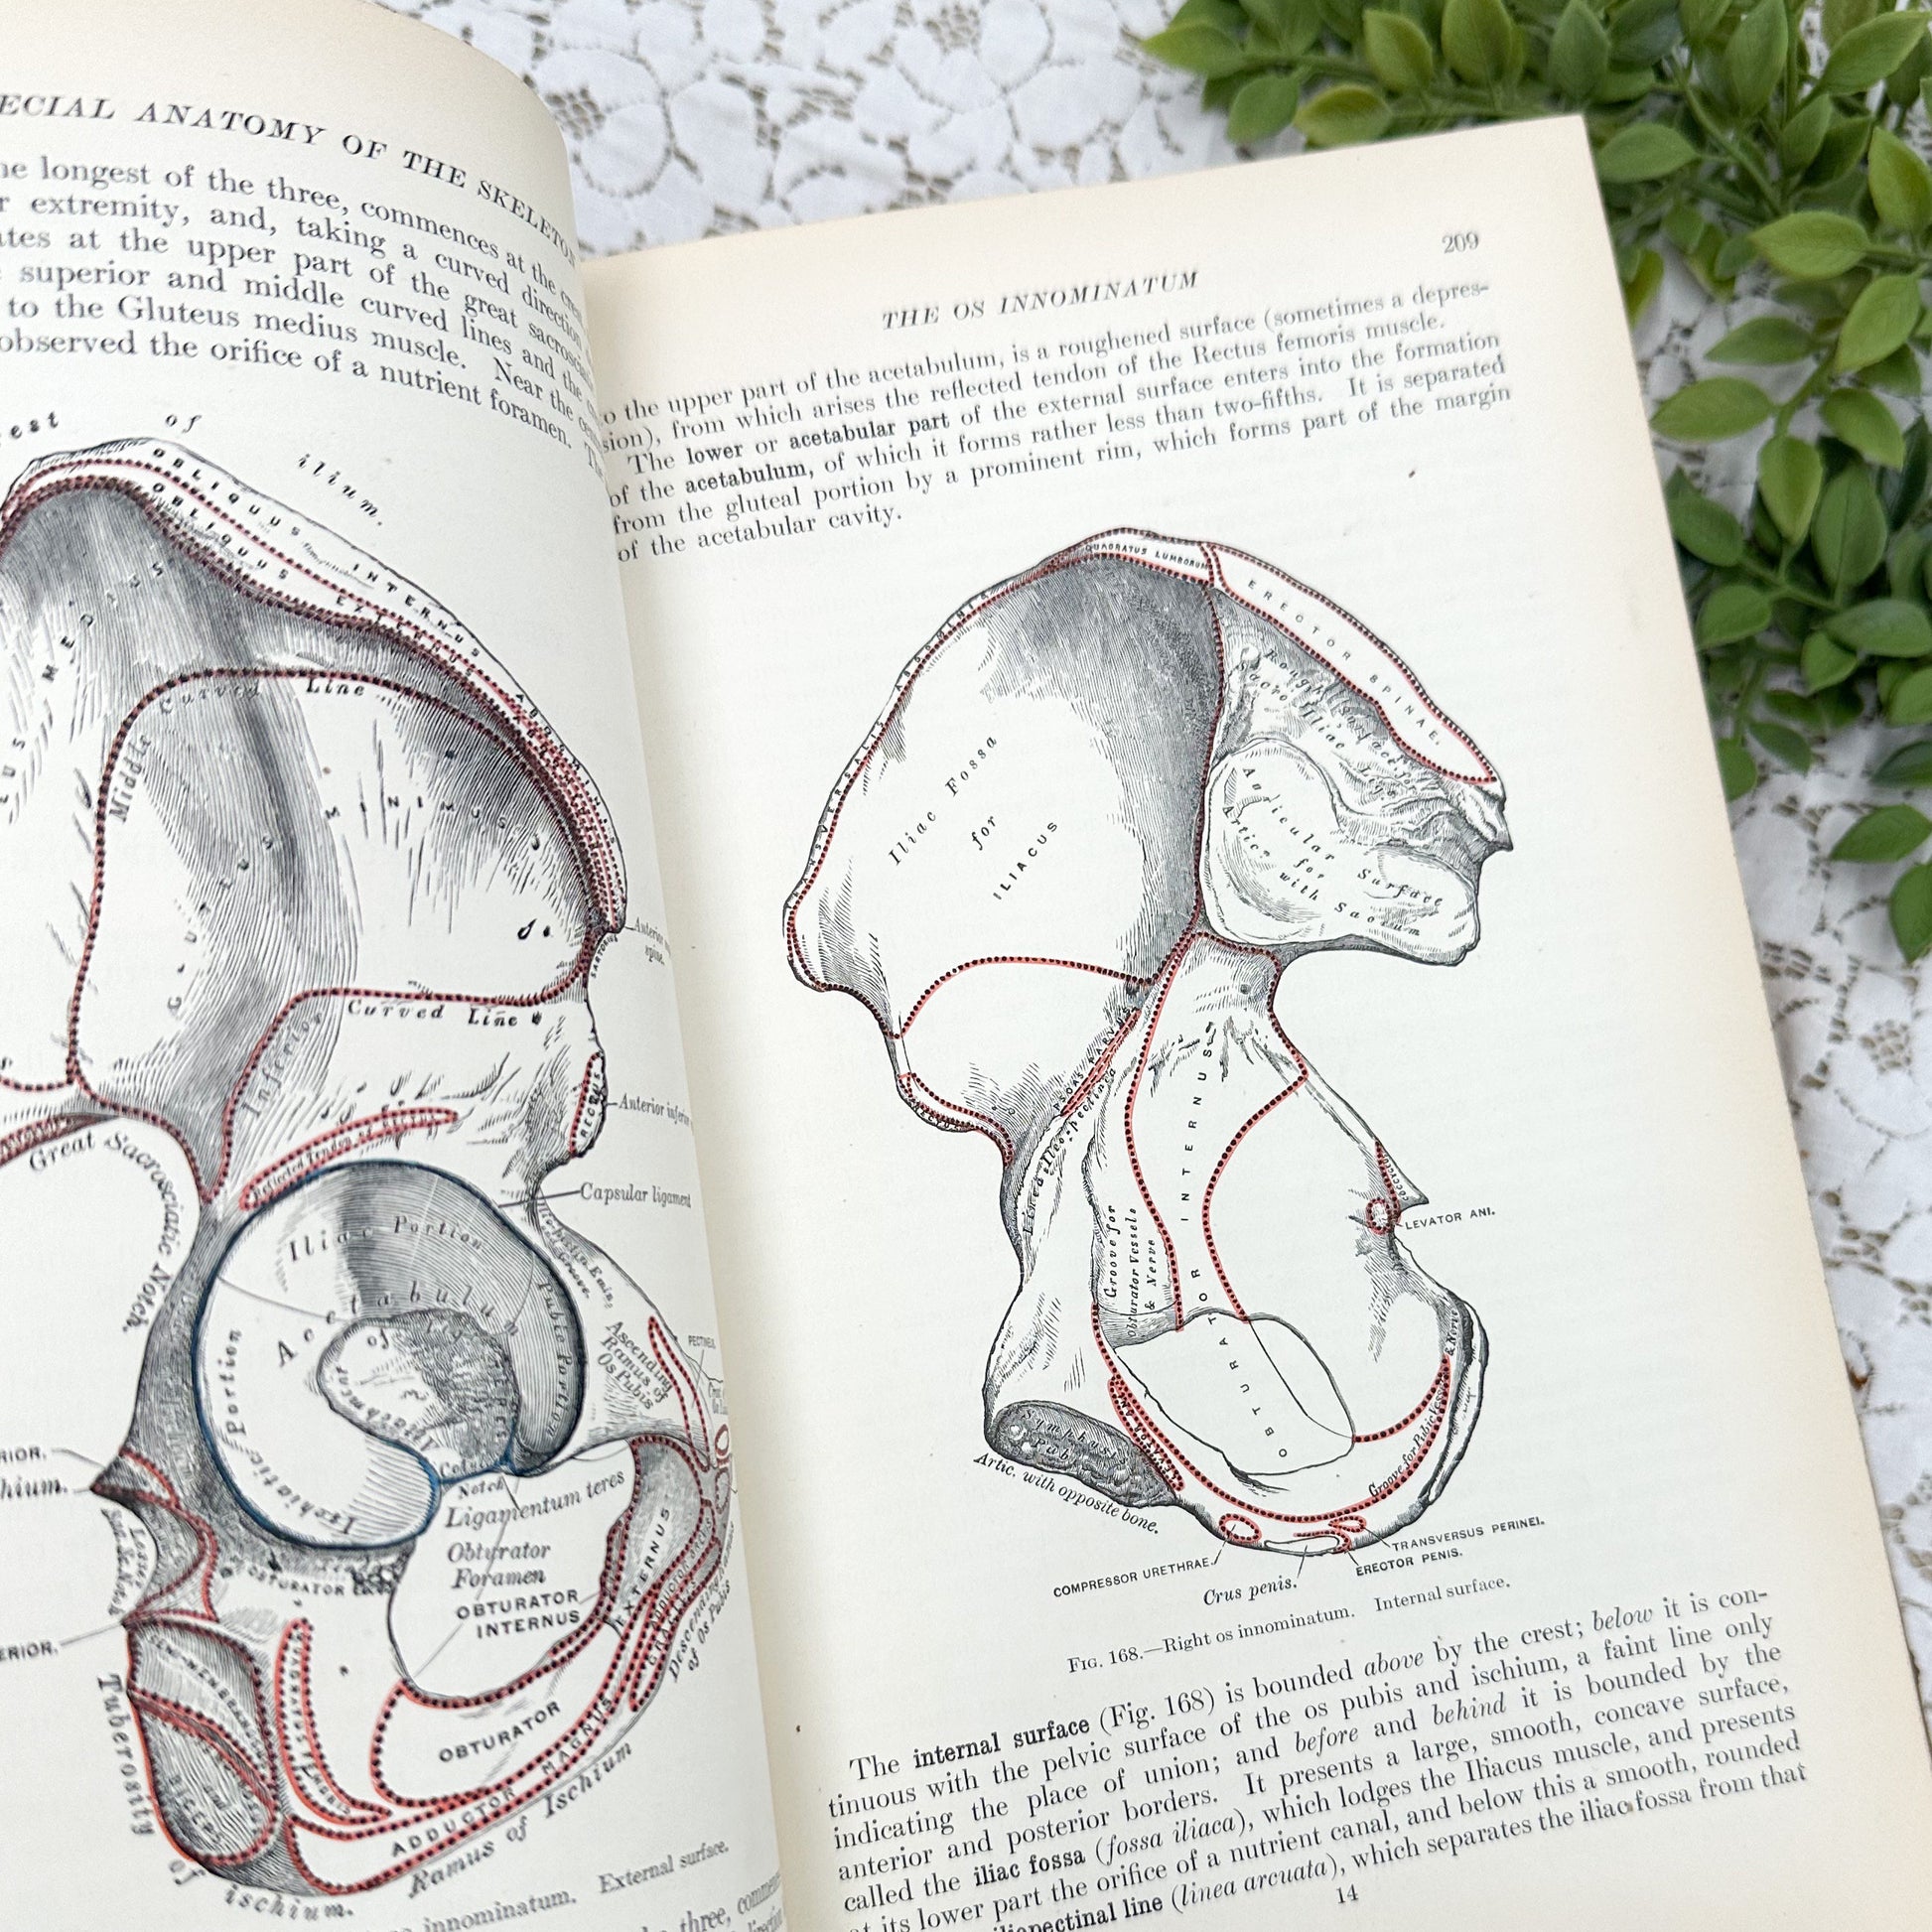 Gray's Anatomy by Edward Anthony Spitzka